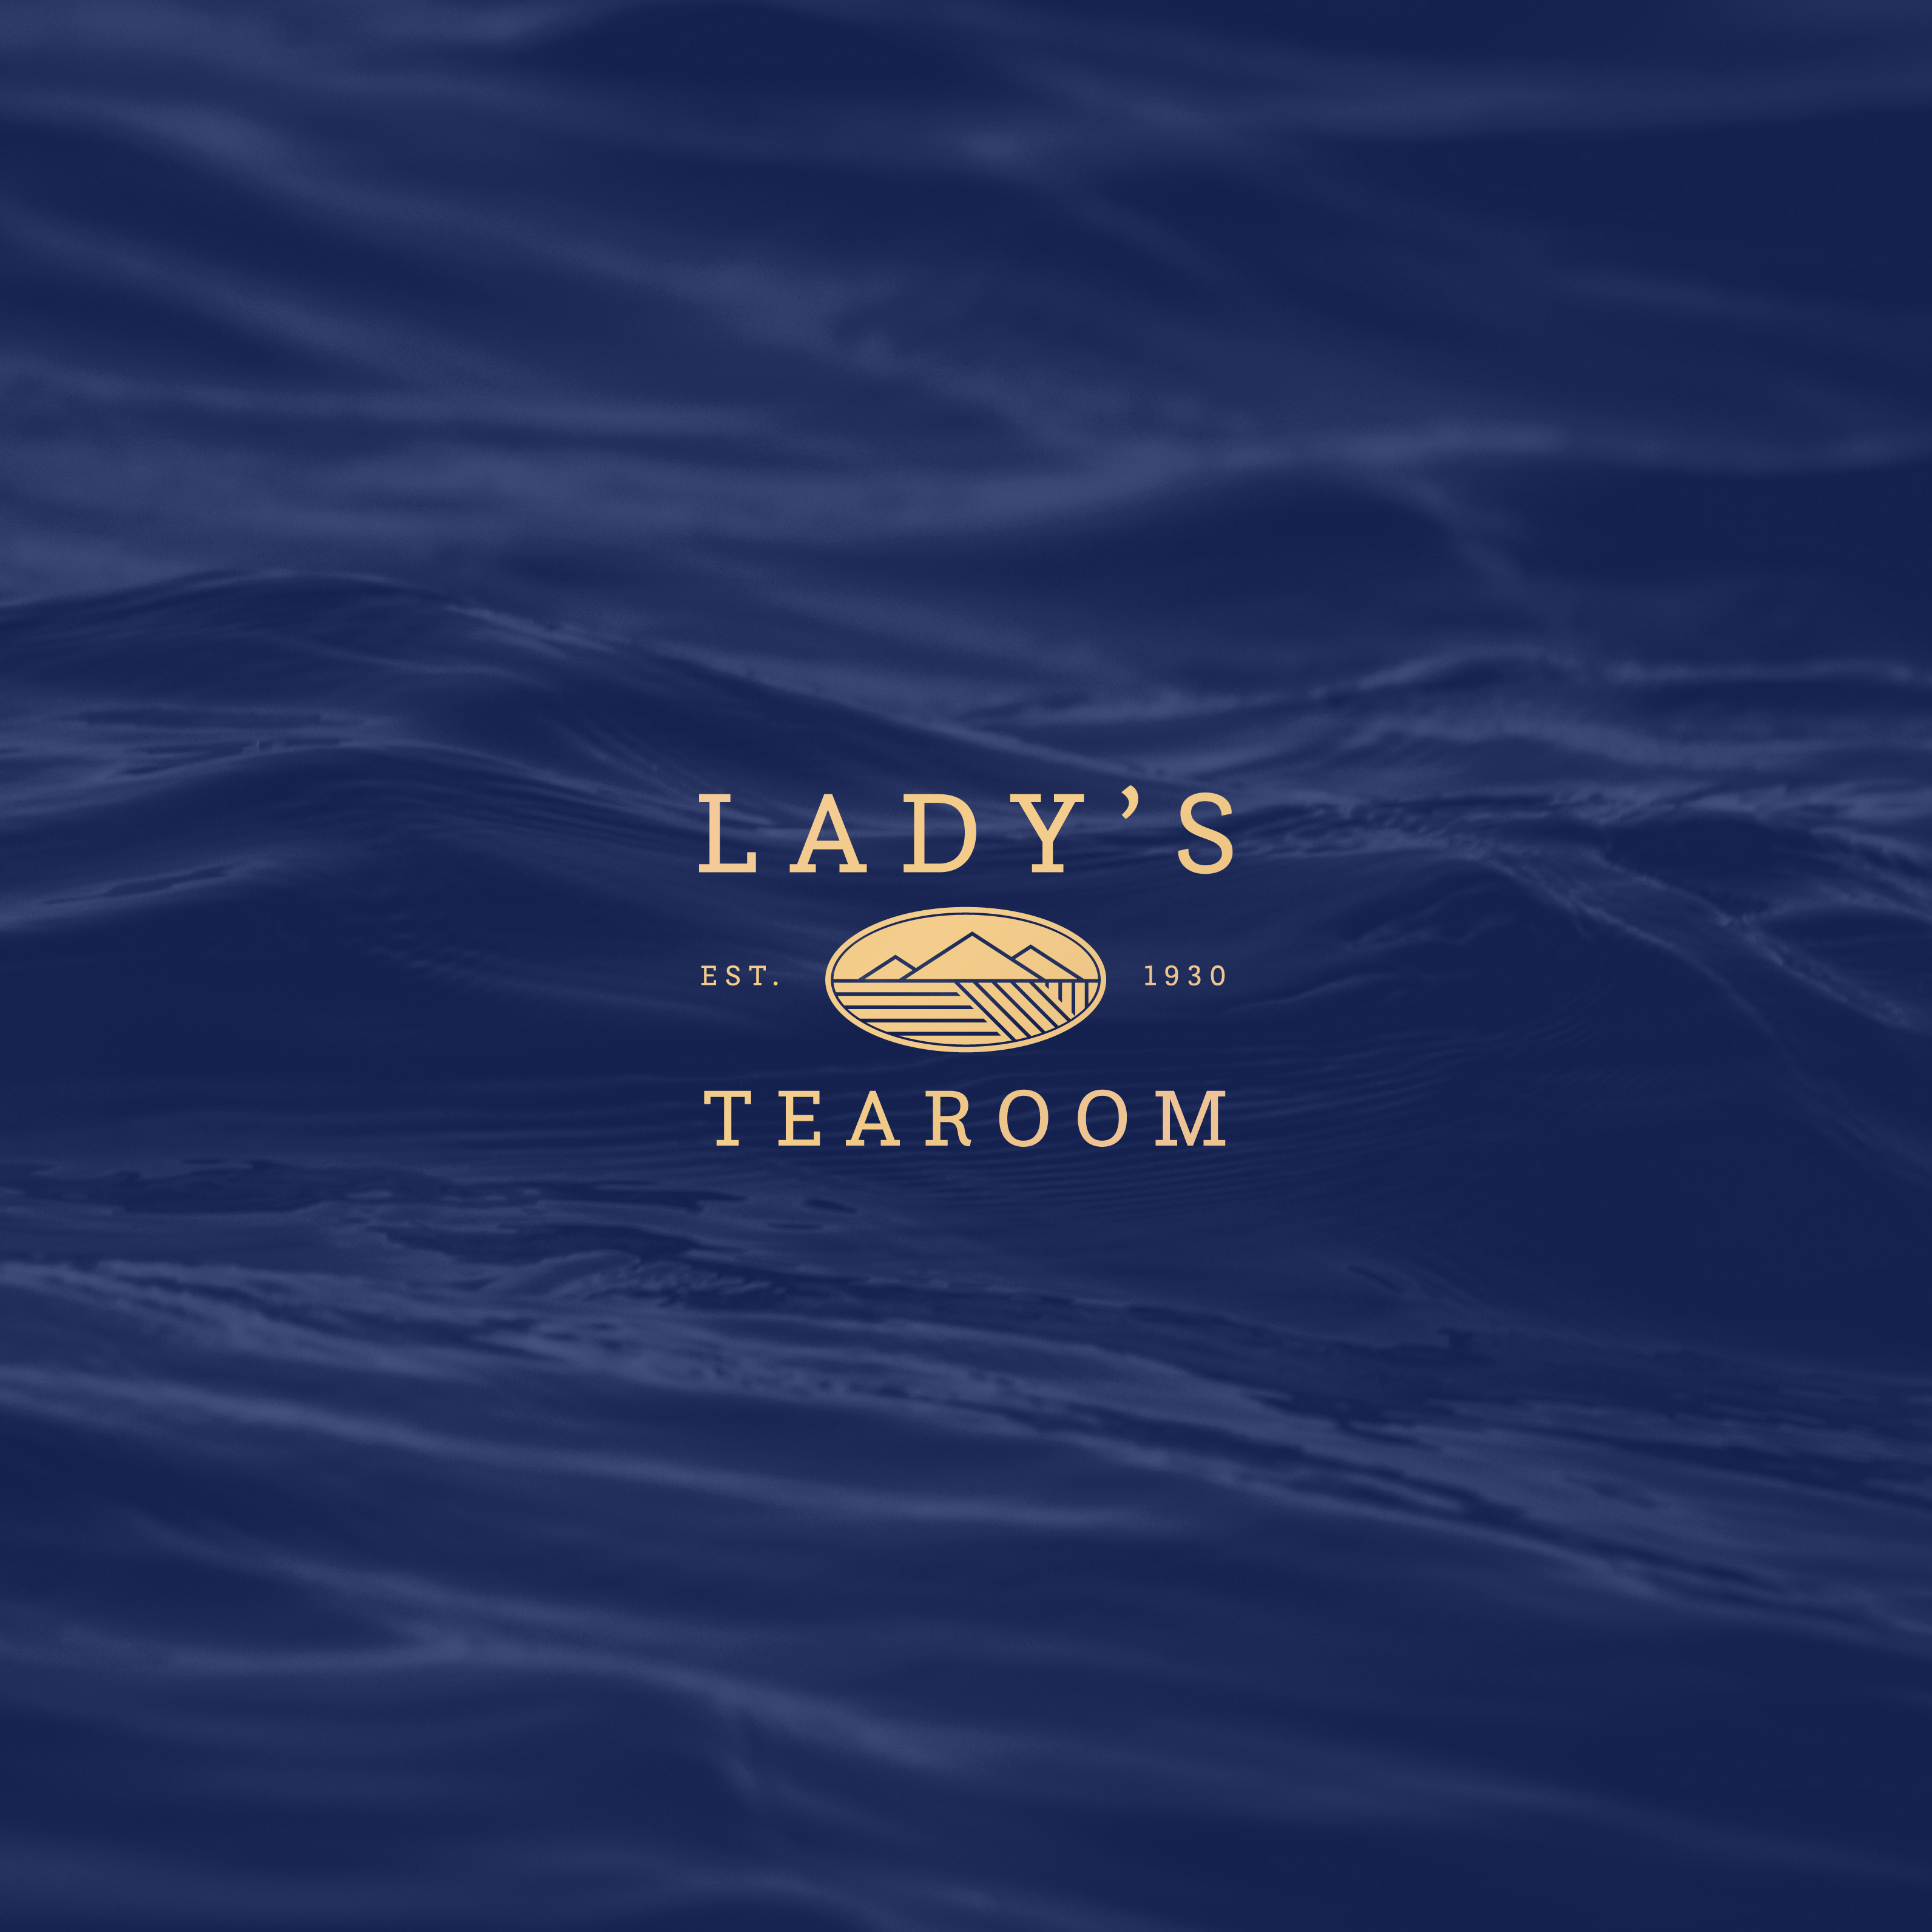 Lady’s Tearoom